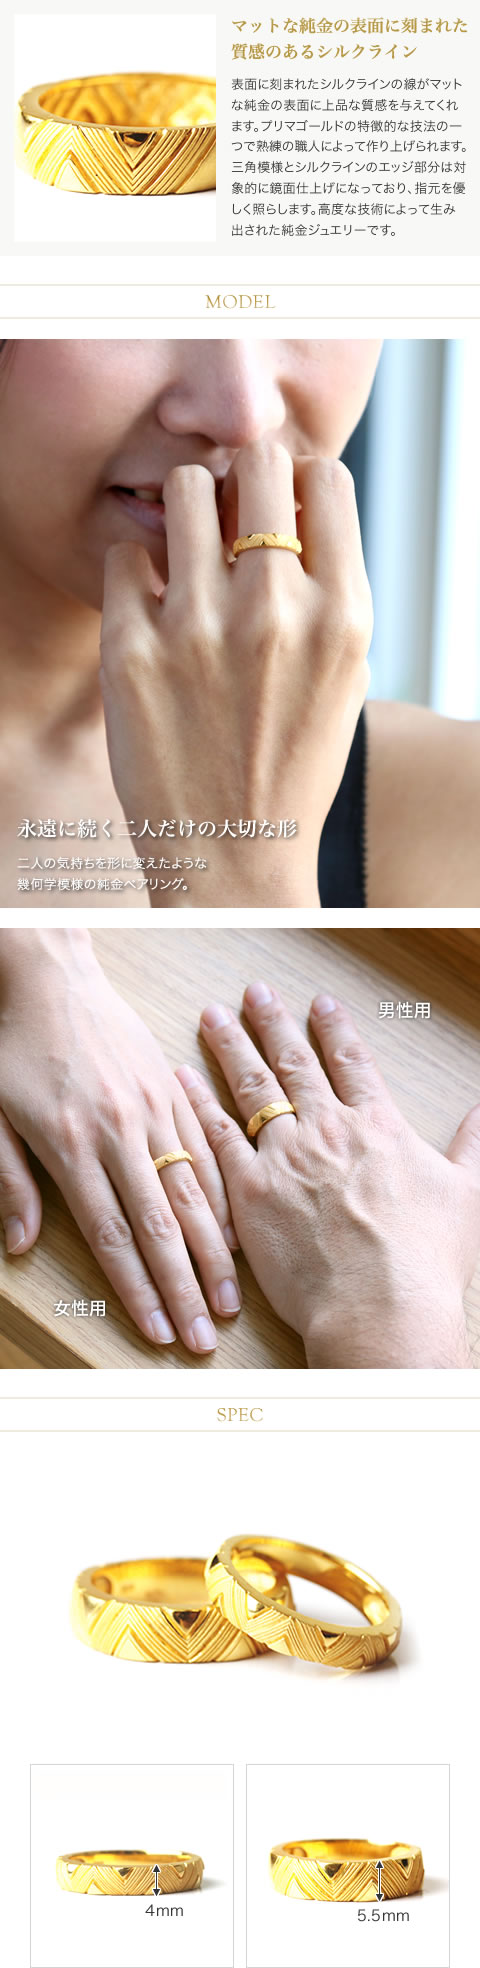 リング(指輪)✨ペアで55,000円✨Pt900&K18イエローゴールド/Sデザインペアリング